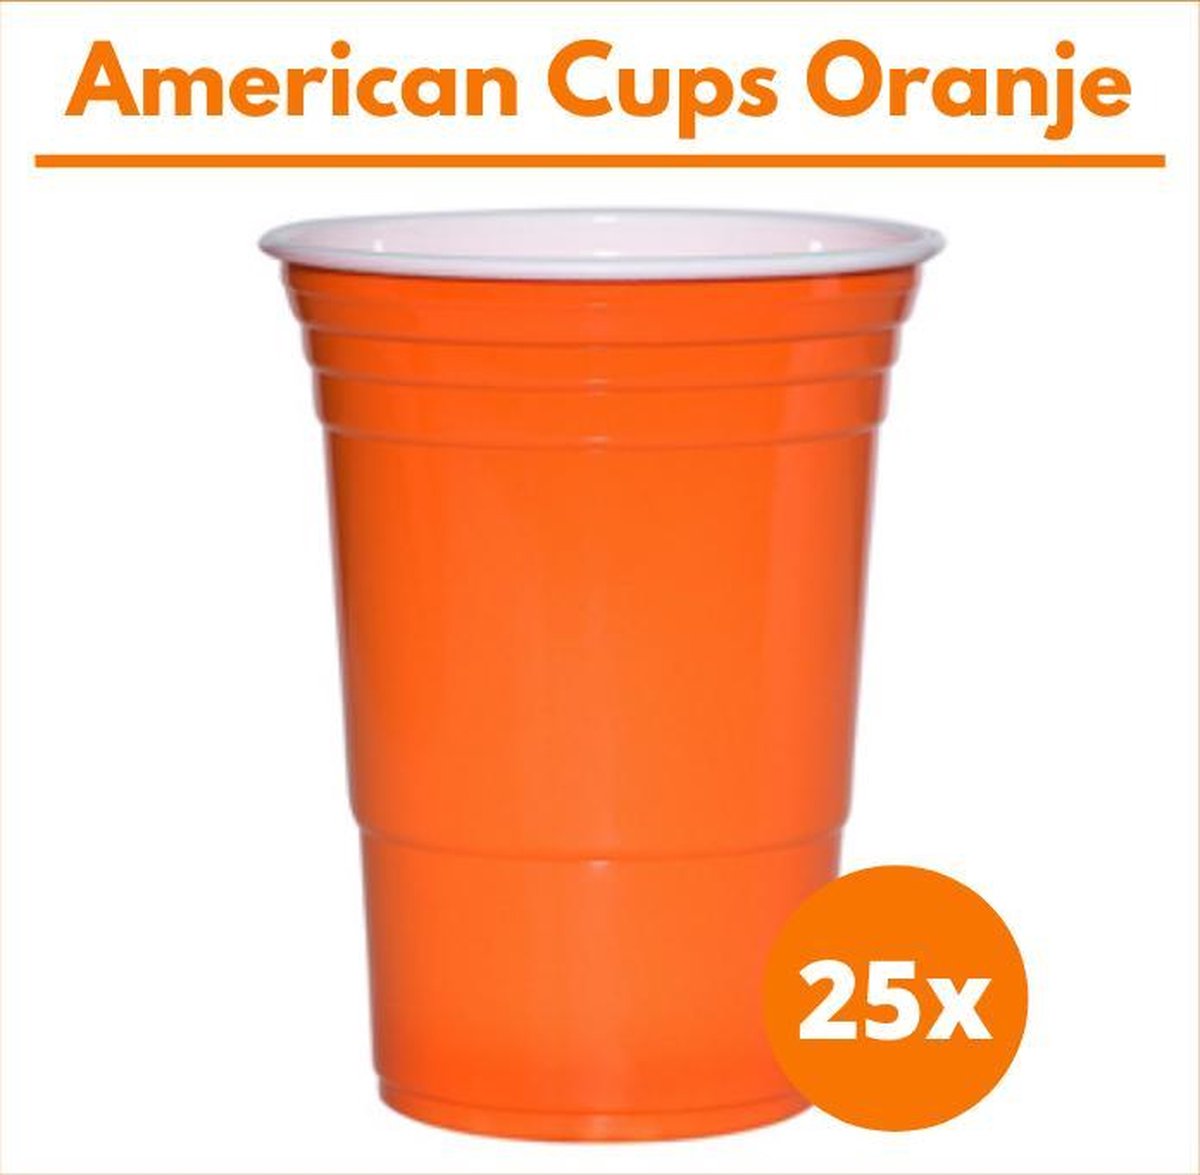 American Cups Oranje - Beer Pong Cups - Red Cups - 473ml - 25st - EK Voetbal - Formule 1 - Koningsdag